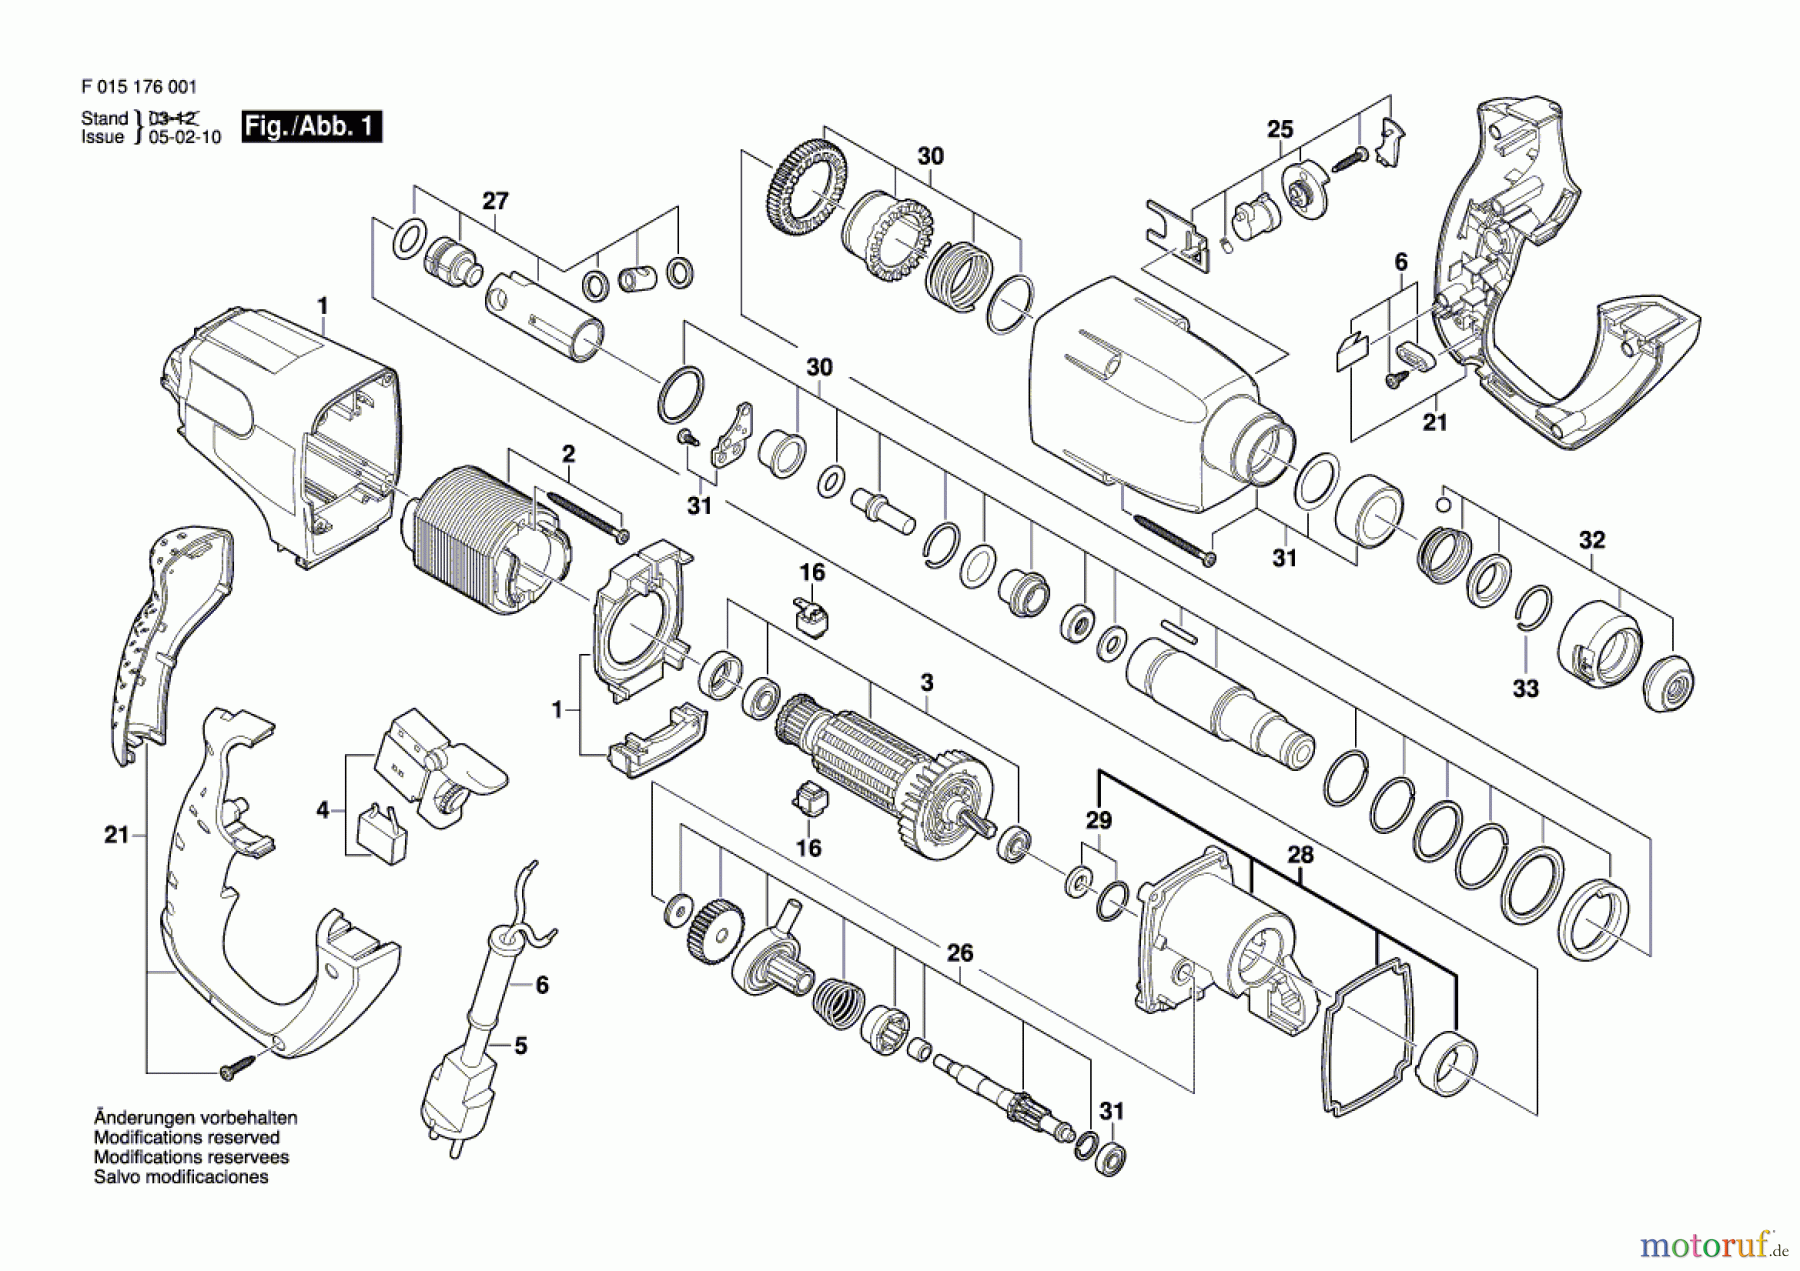  Bosch Werkzeug Bohrhammer 1760 Seite 1